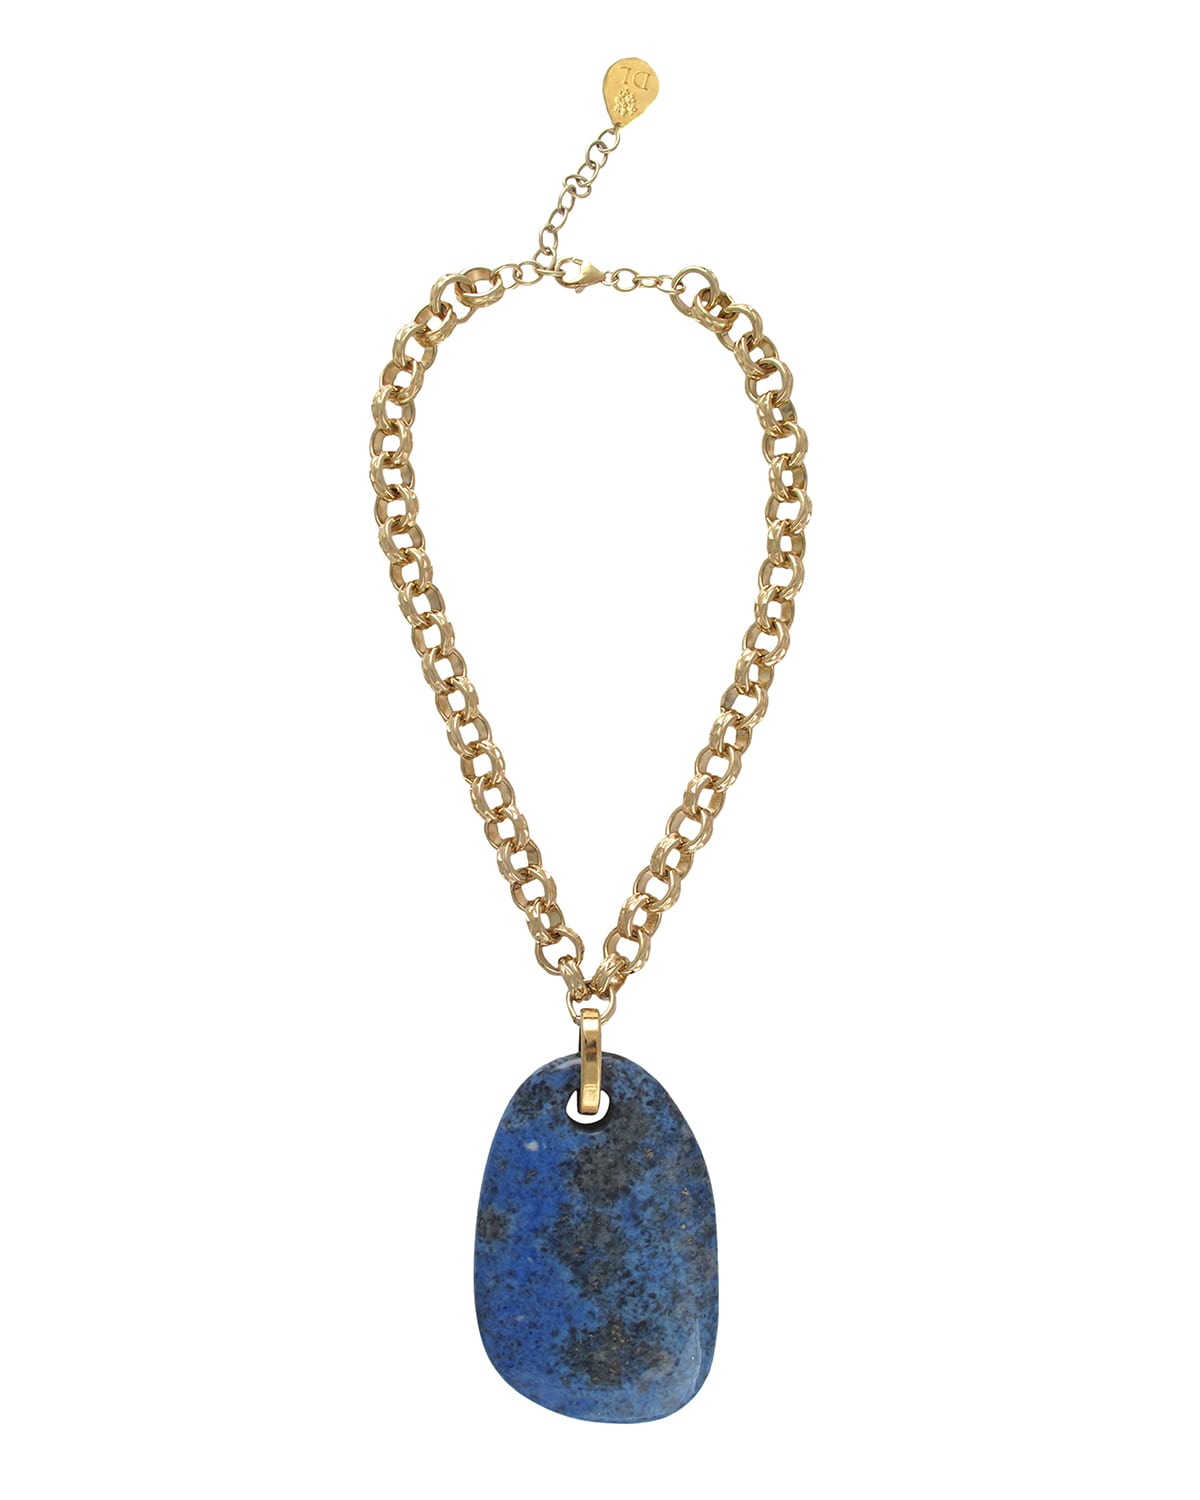 Devon Leigh Blue Lapis Pendant Necklace